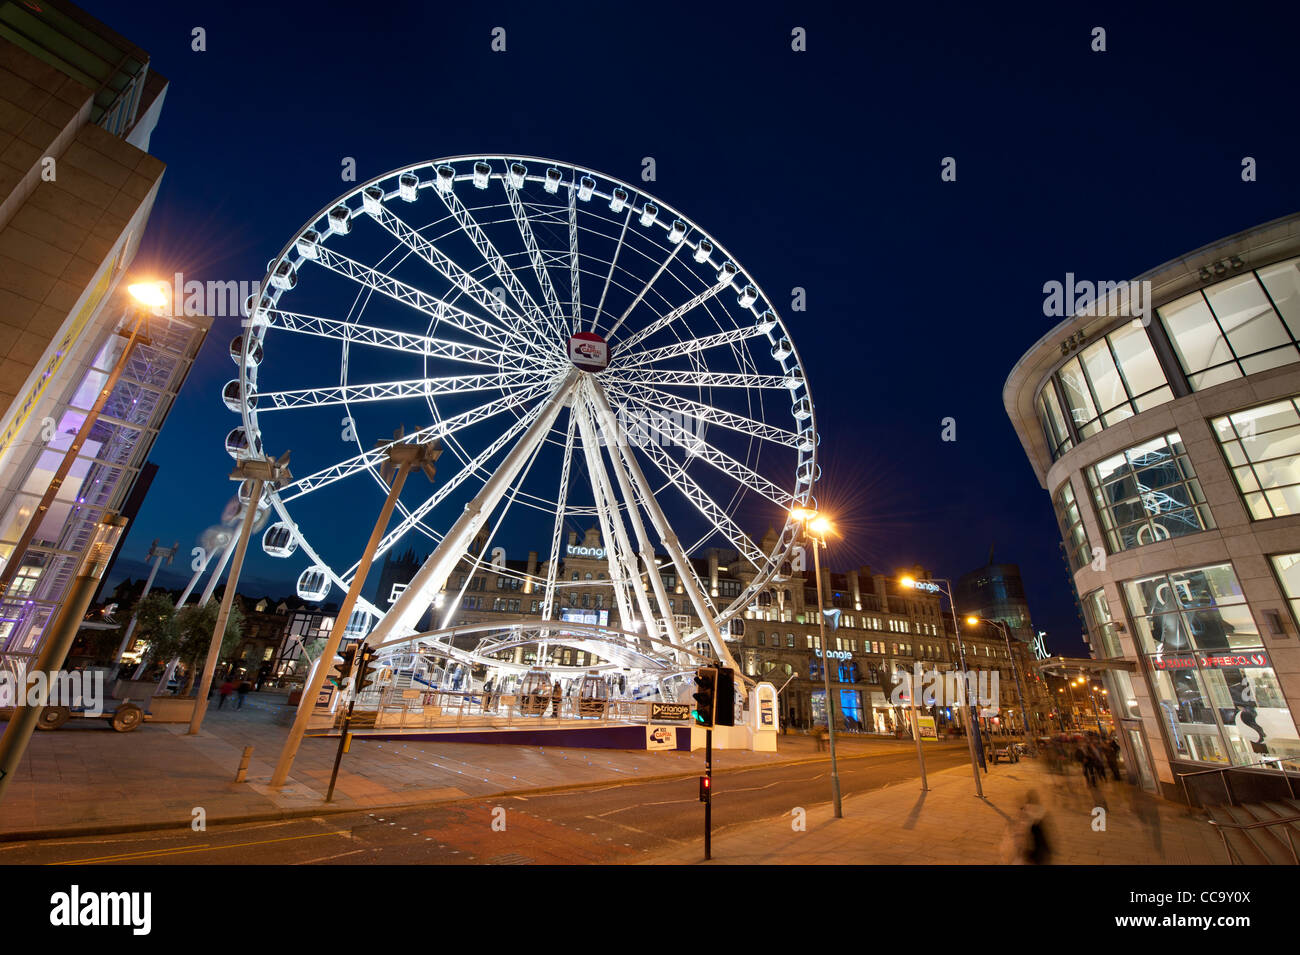 La roue de Manchester en grande roue public Exchange Square tard dans la nuit. Banque D'Images